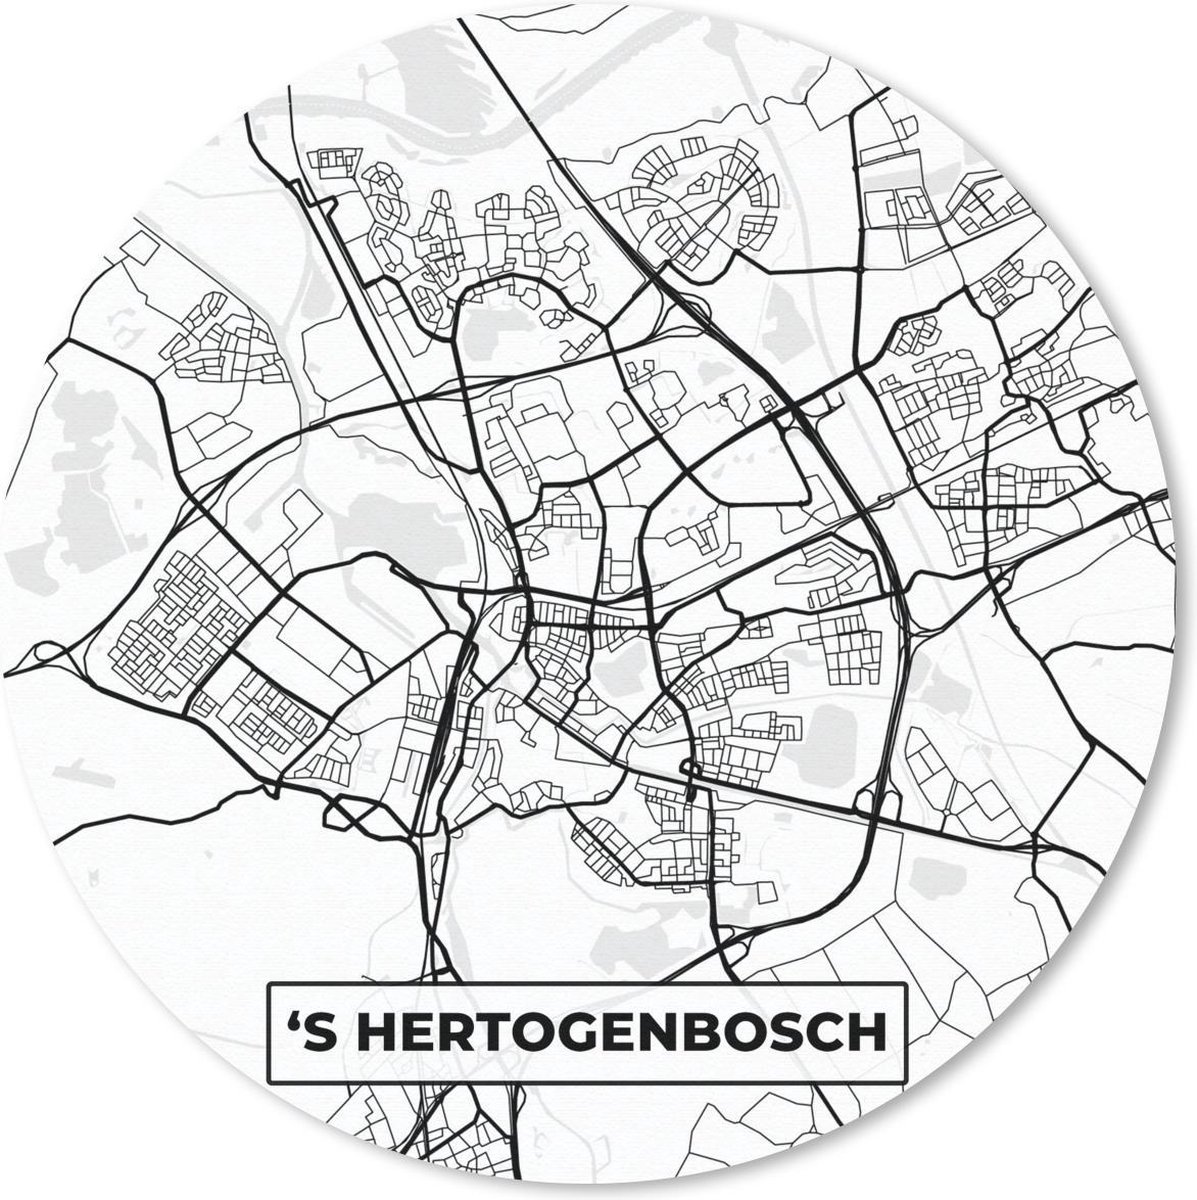 Muismat - Mousepad - Rond - Kaart - 's-Hertogenbosch - Zwart - Wit - 30x30 cm - Ronde muismat